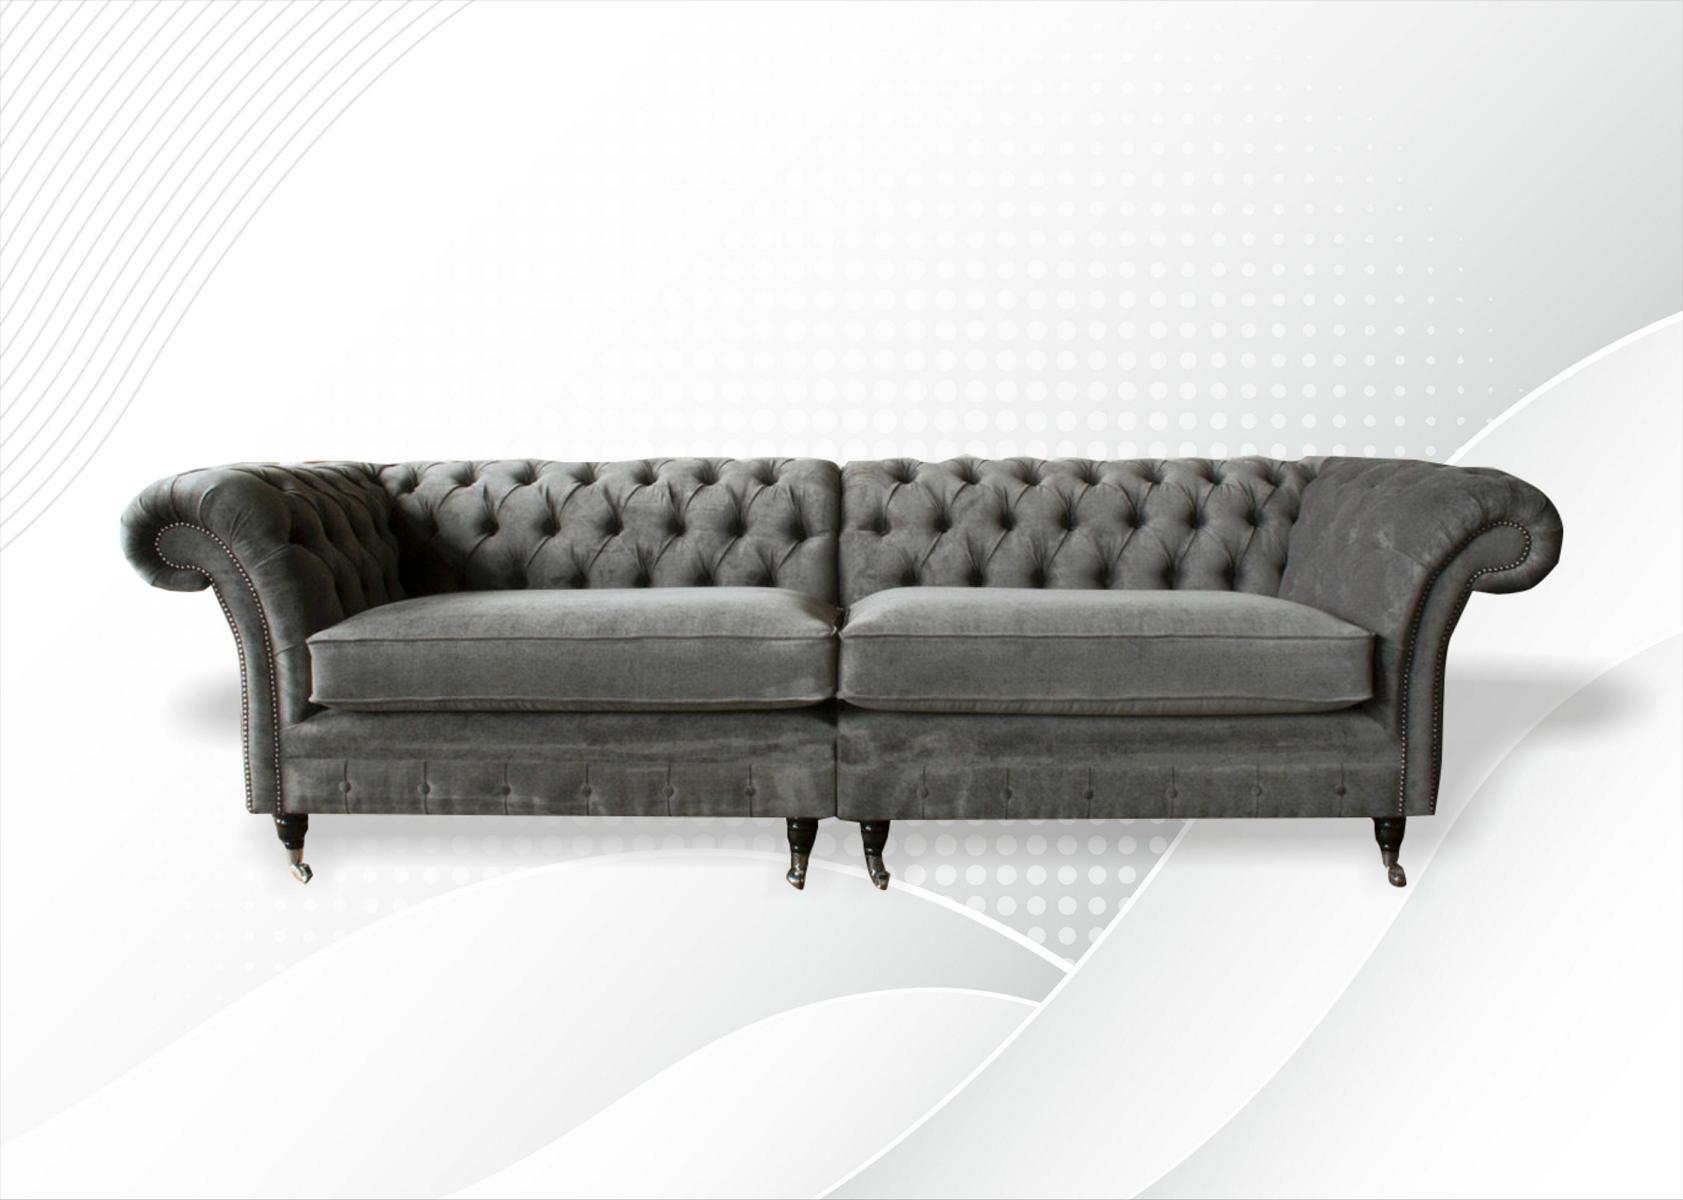 xxl Sofa 4 Sitzer Couch Chesterfield Polster Sitz Garnitur Leder Textil